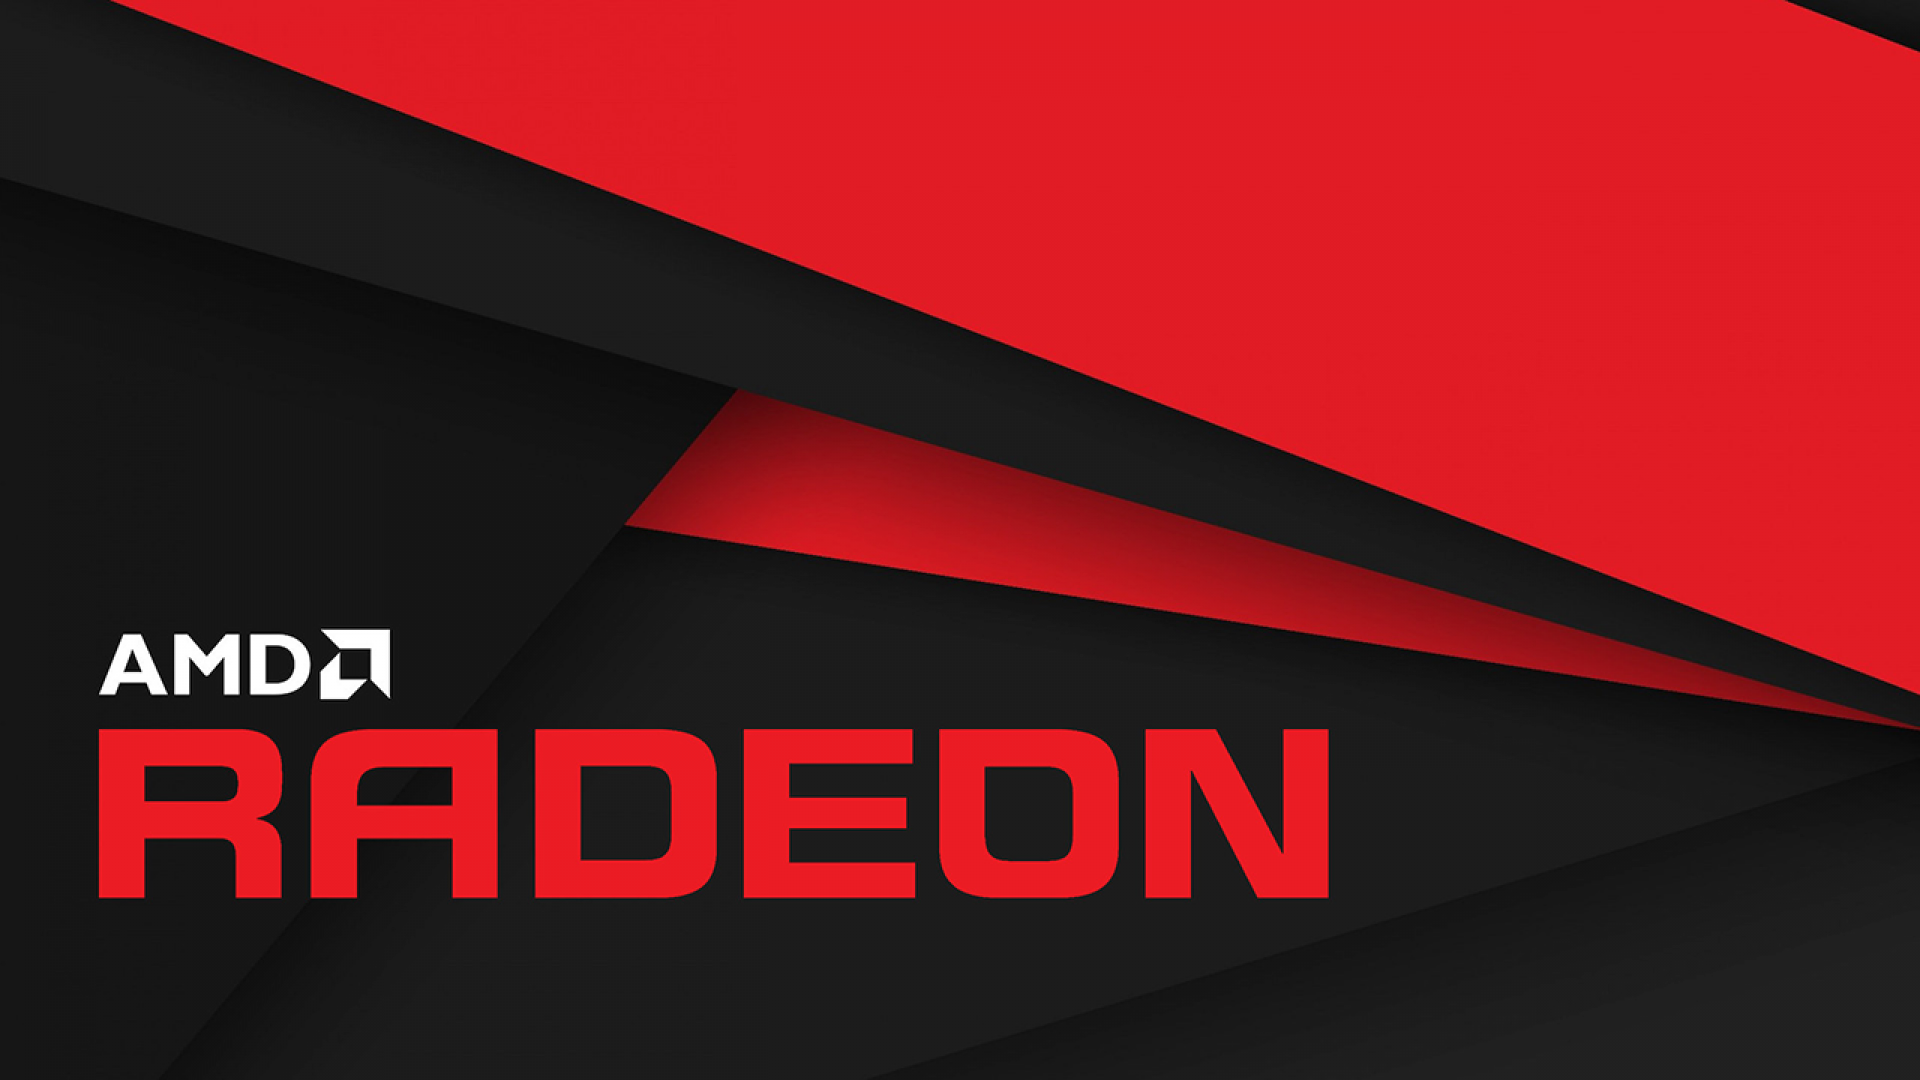 AMD زمان نامناسبی را برای قطع پشتیبانی از کارت گرافیک‌های قدیمی خود انتخاب کرده است